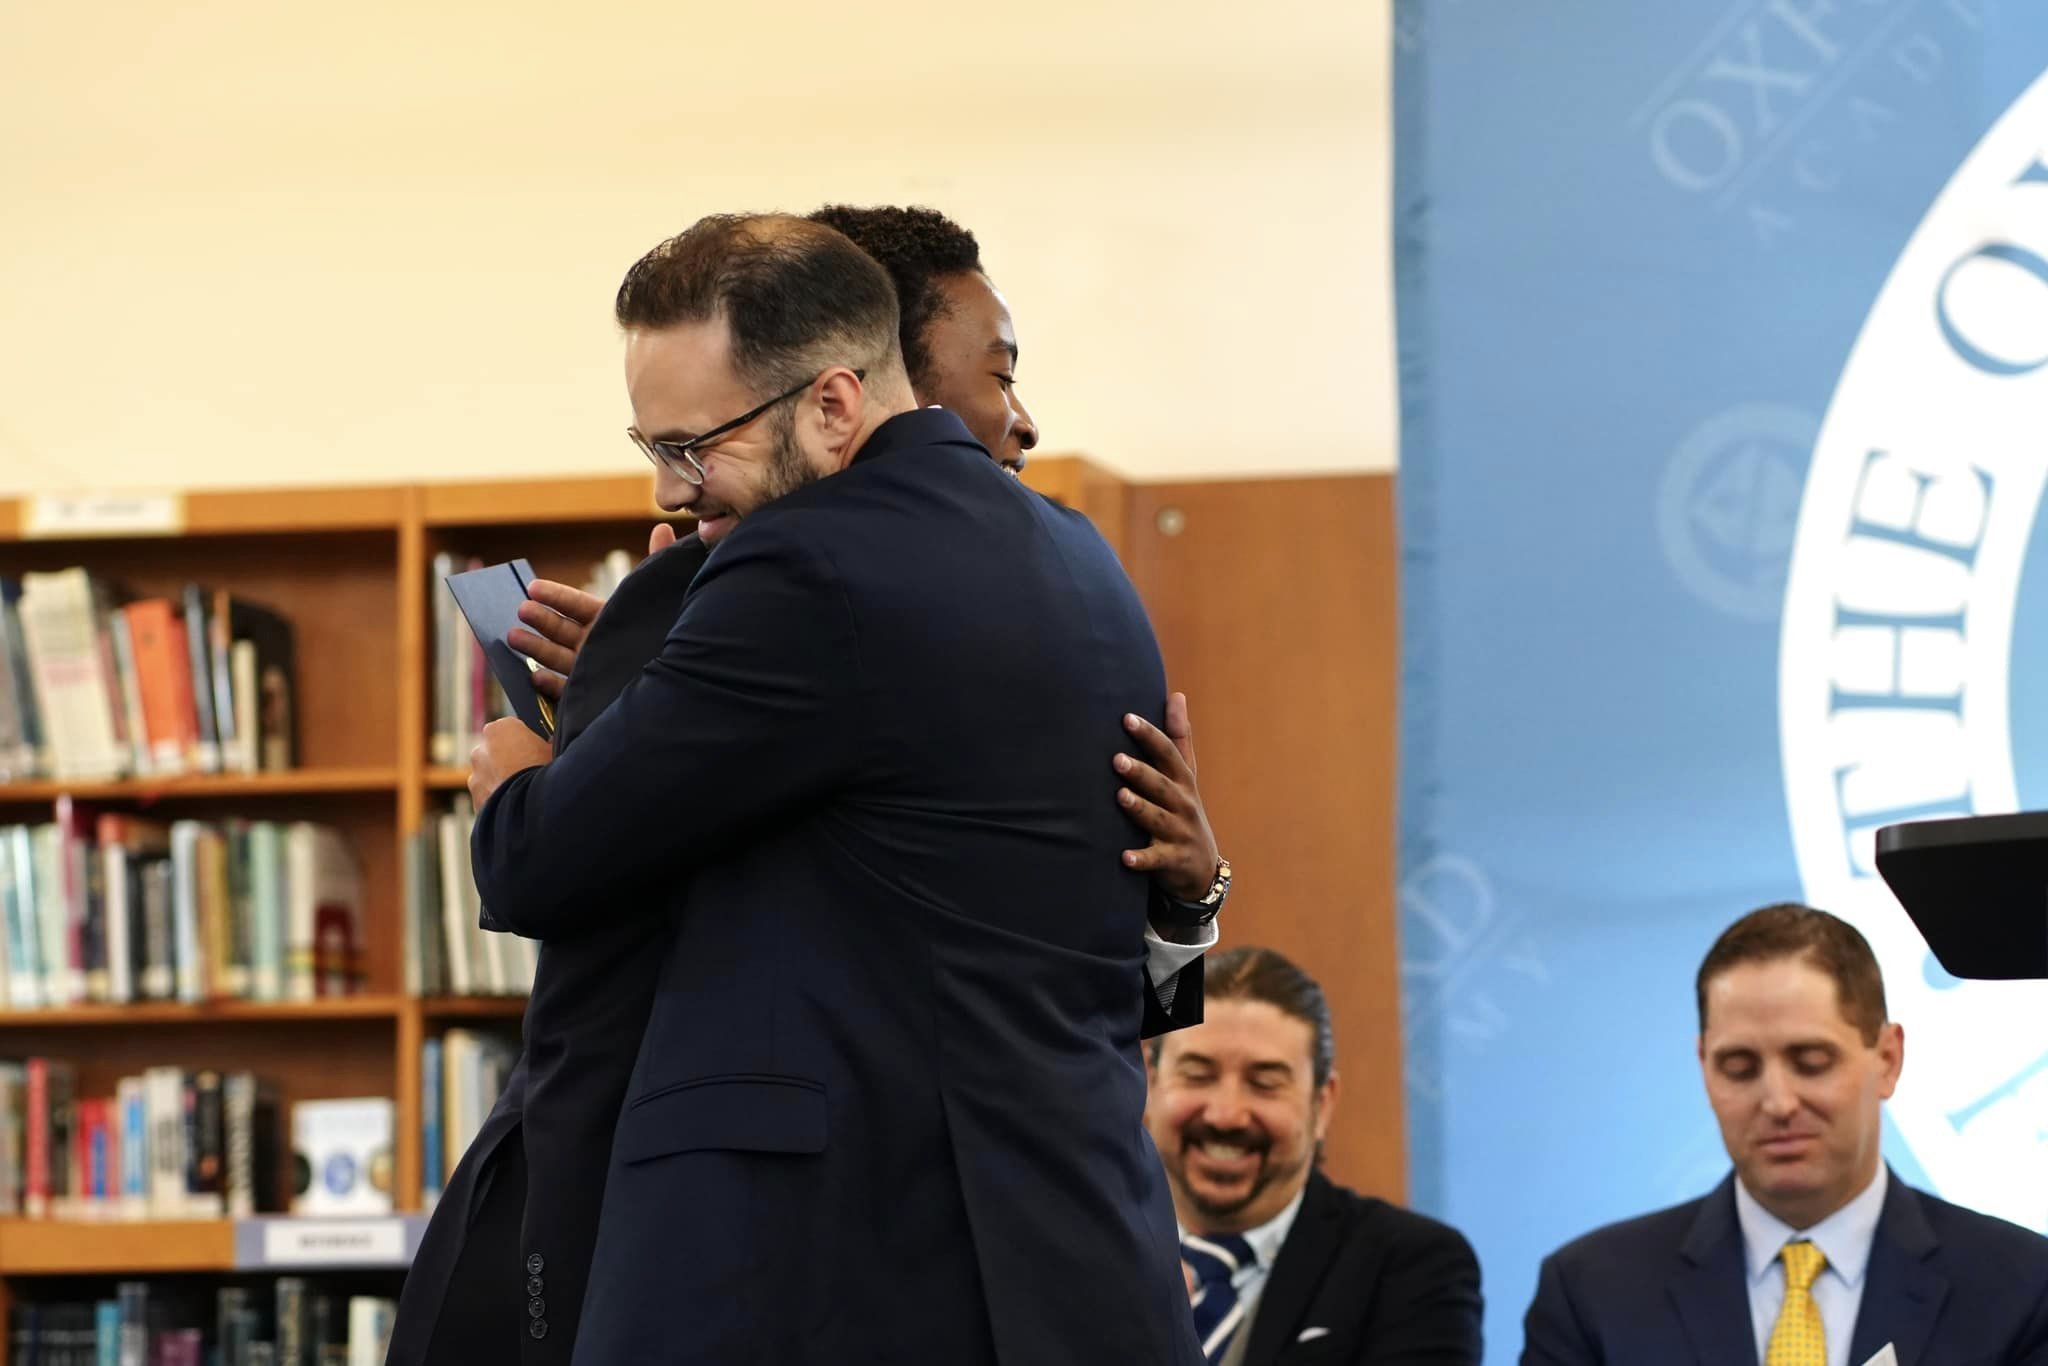 A man in a suit is hugging a man in a suit at The Best Boarding School.